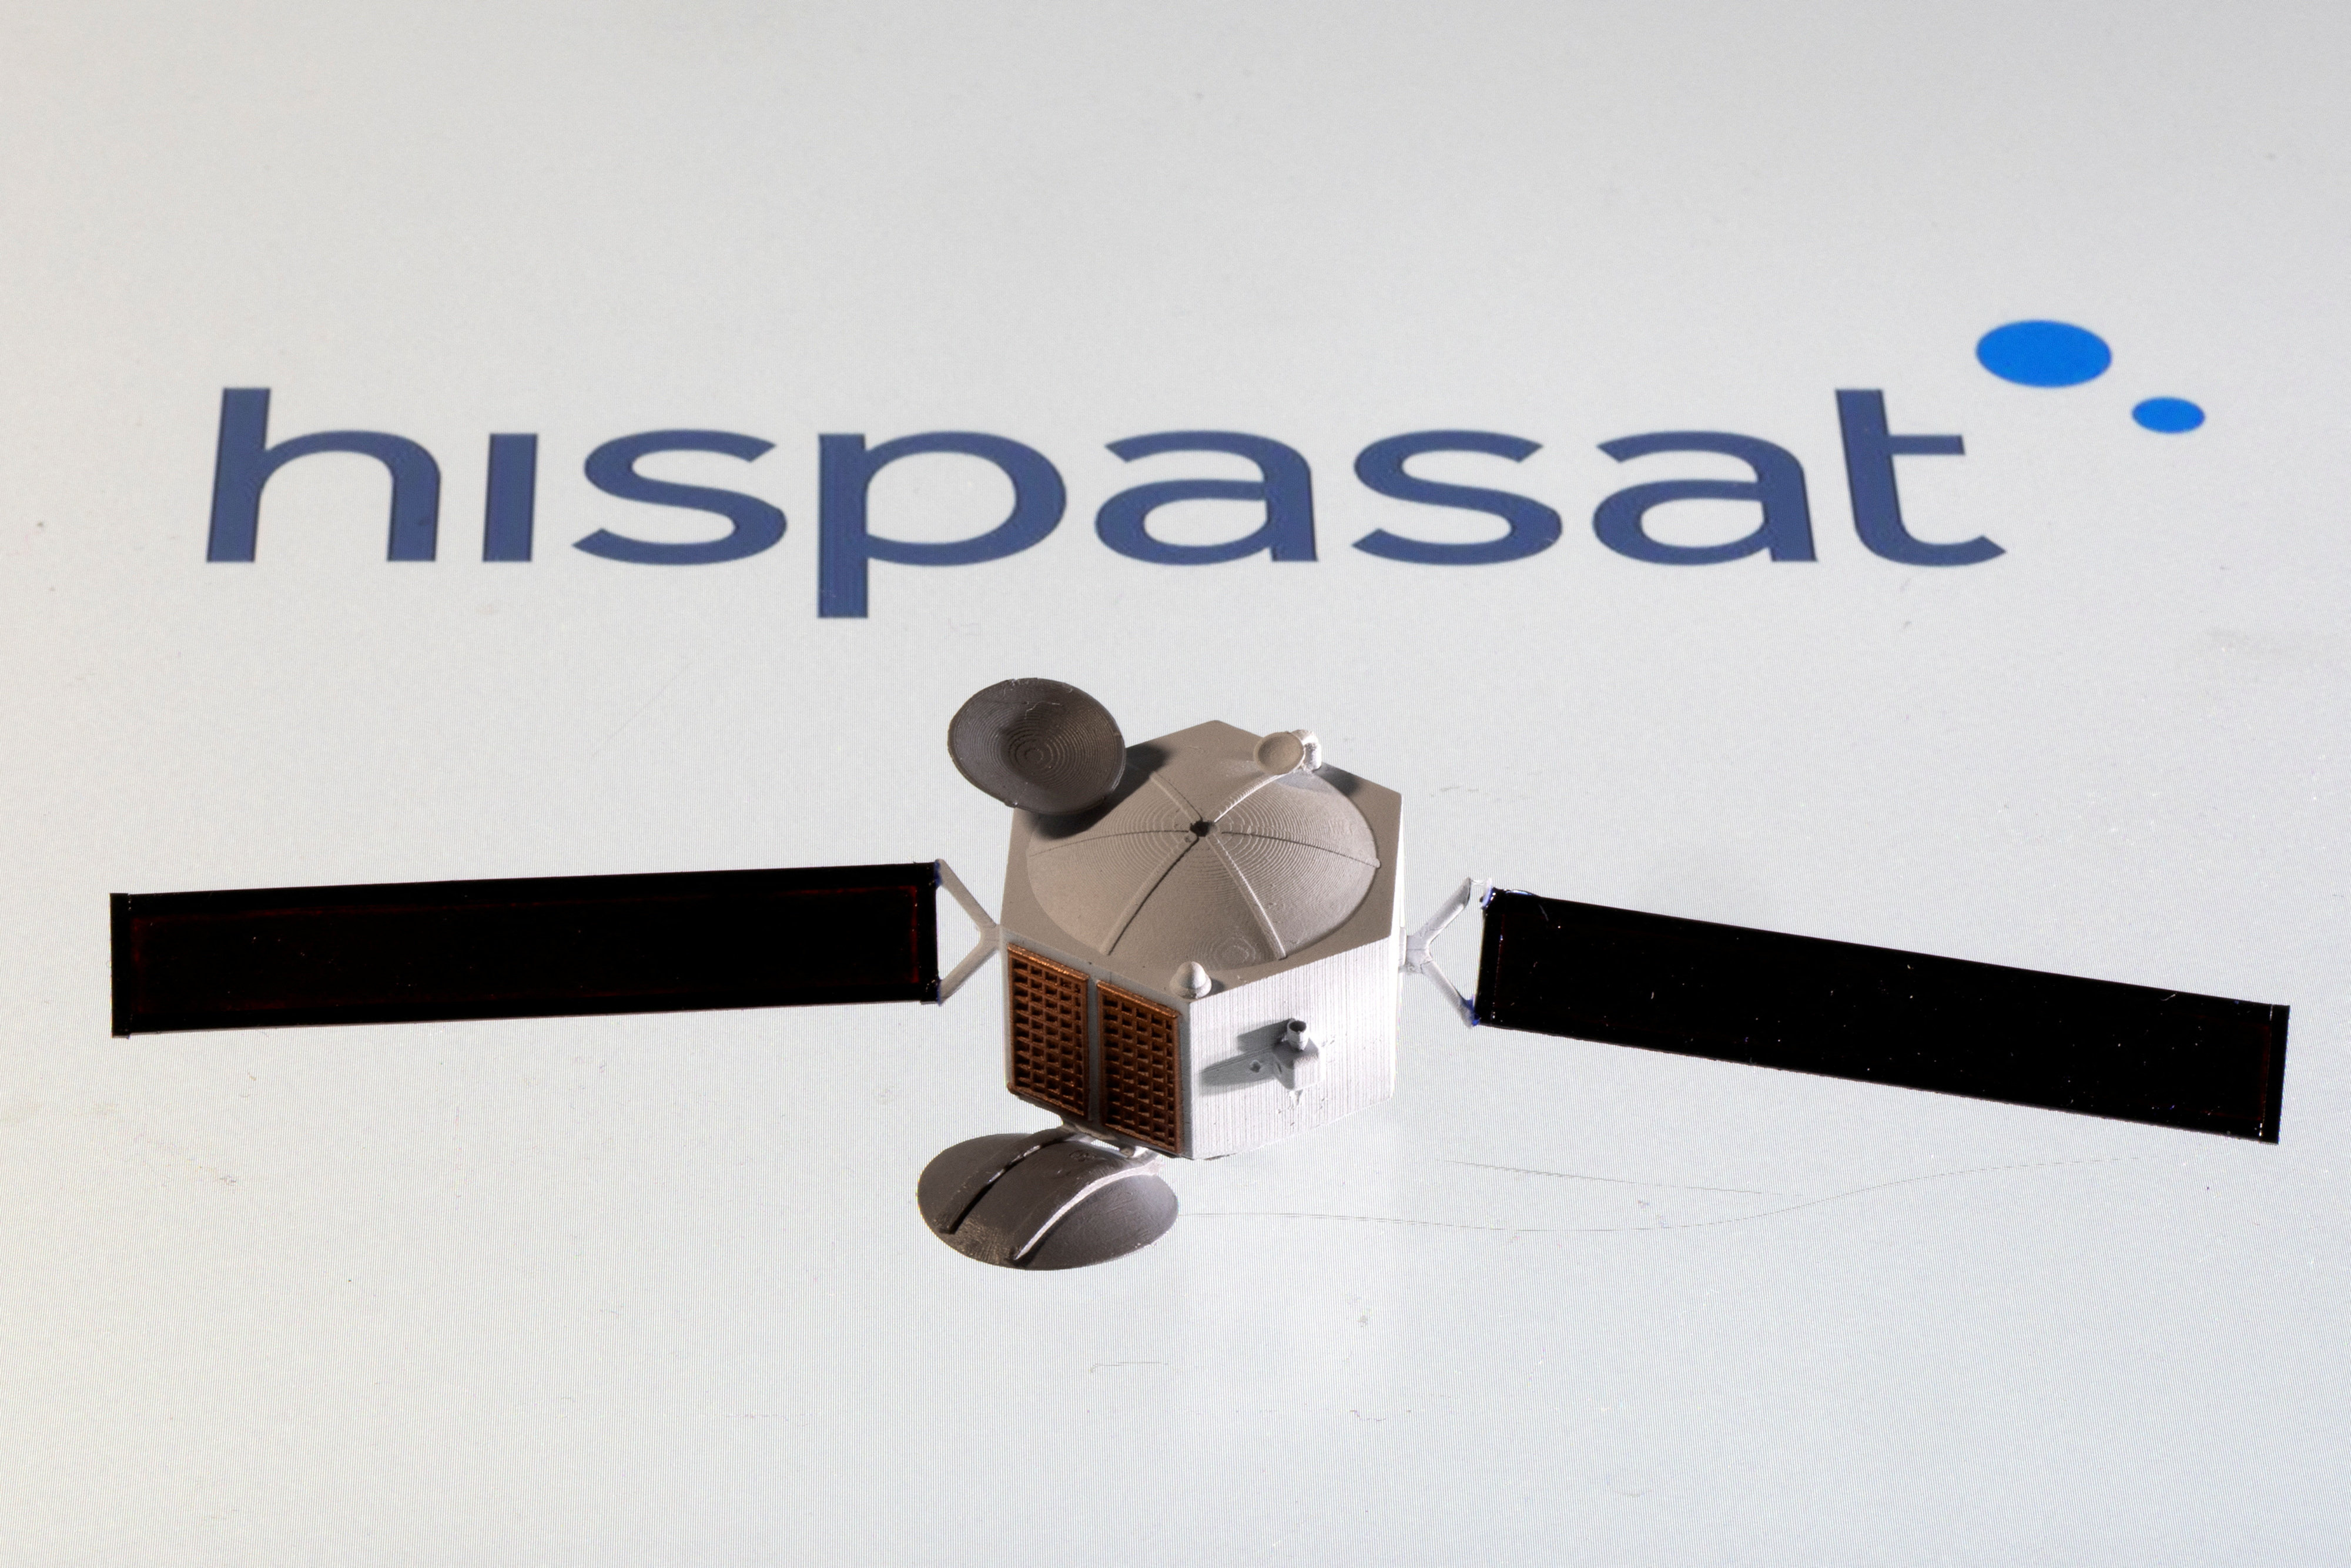 Illustration shows Hispasat logo and satellite model